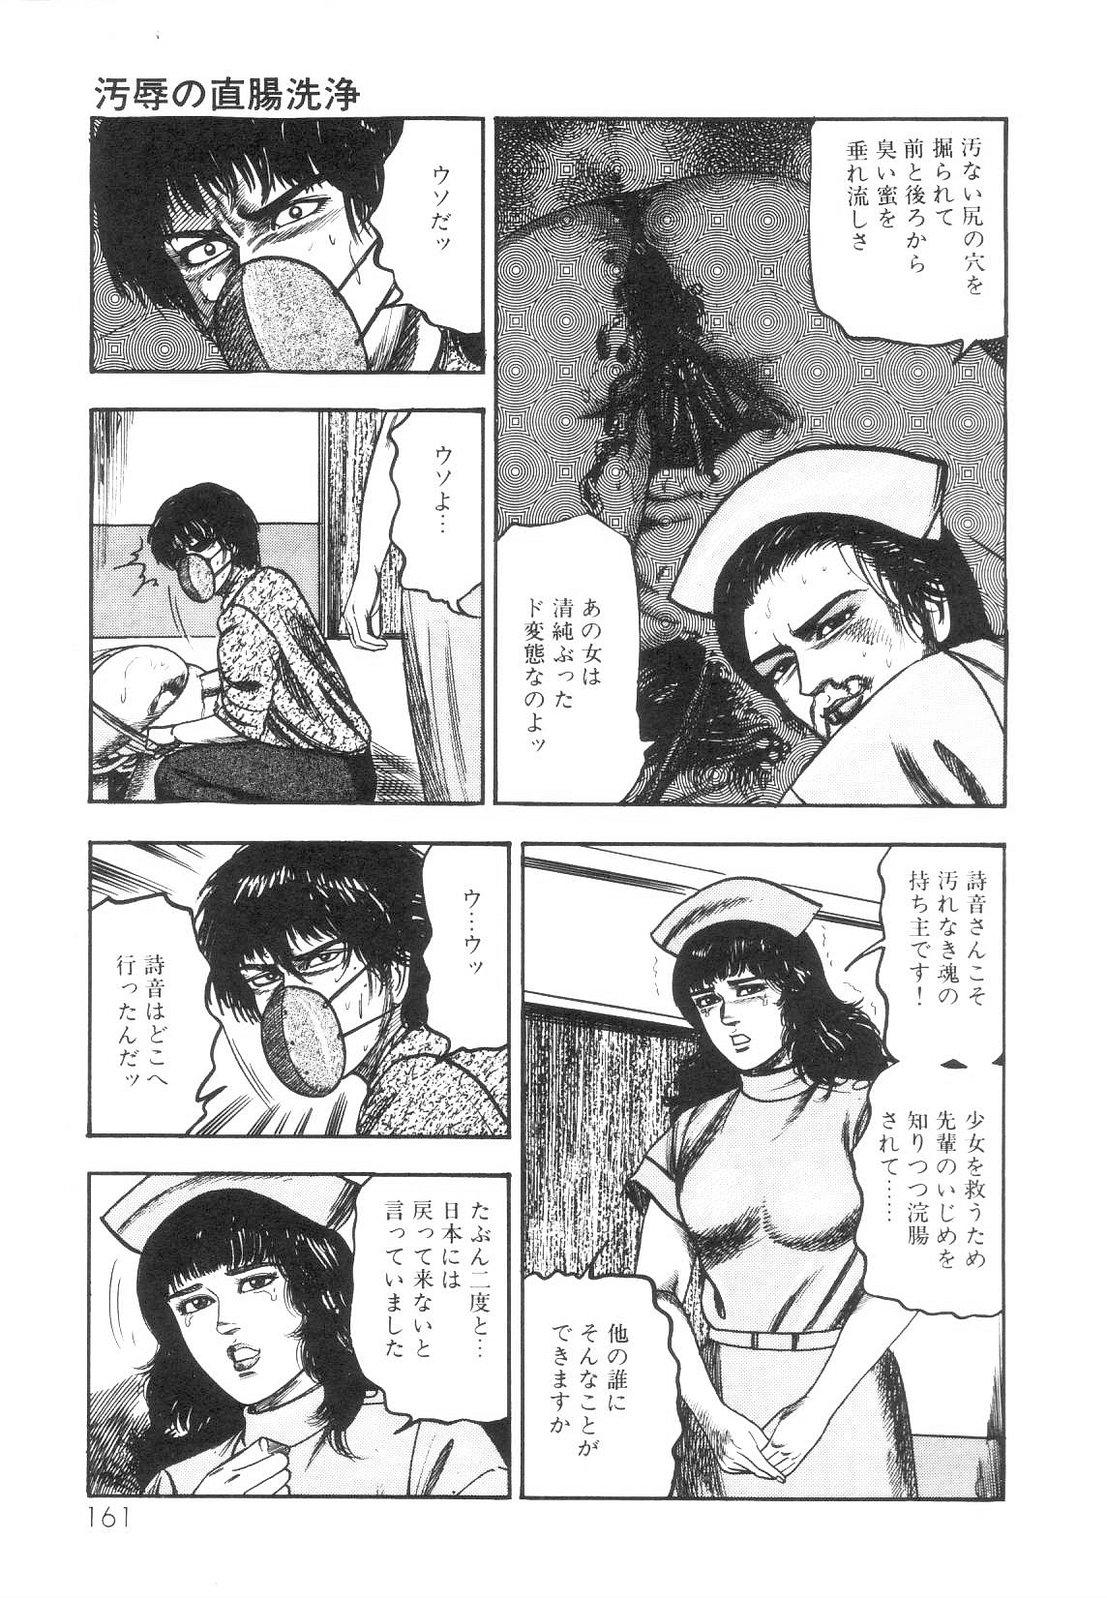 Shiro no Mokushiroku Vol. 1 - Sei Shojo Shion no Shou 161